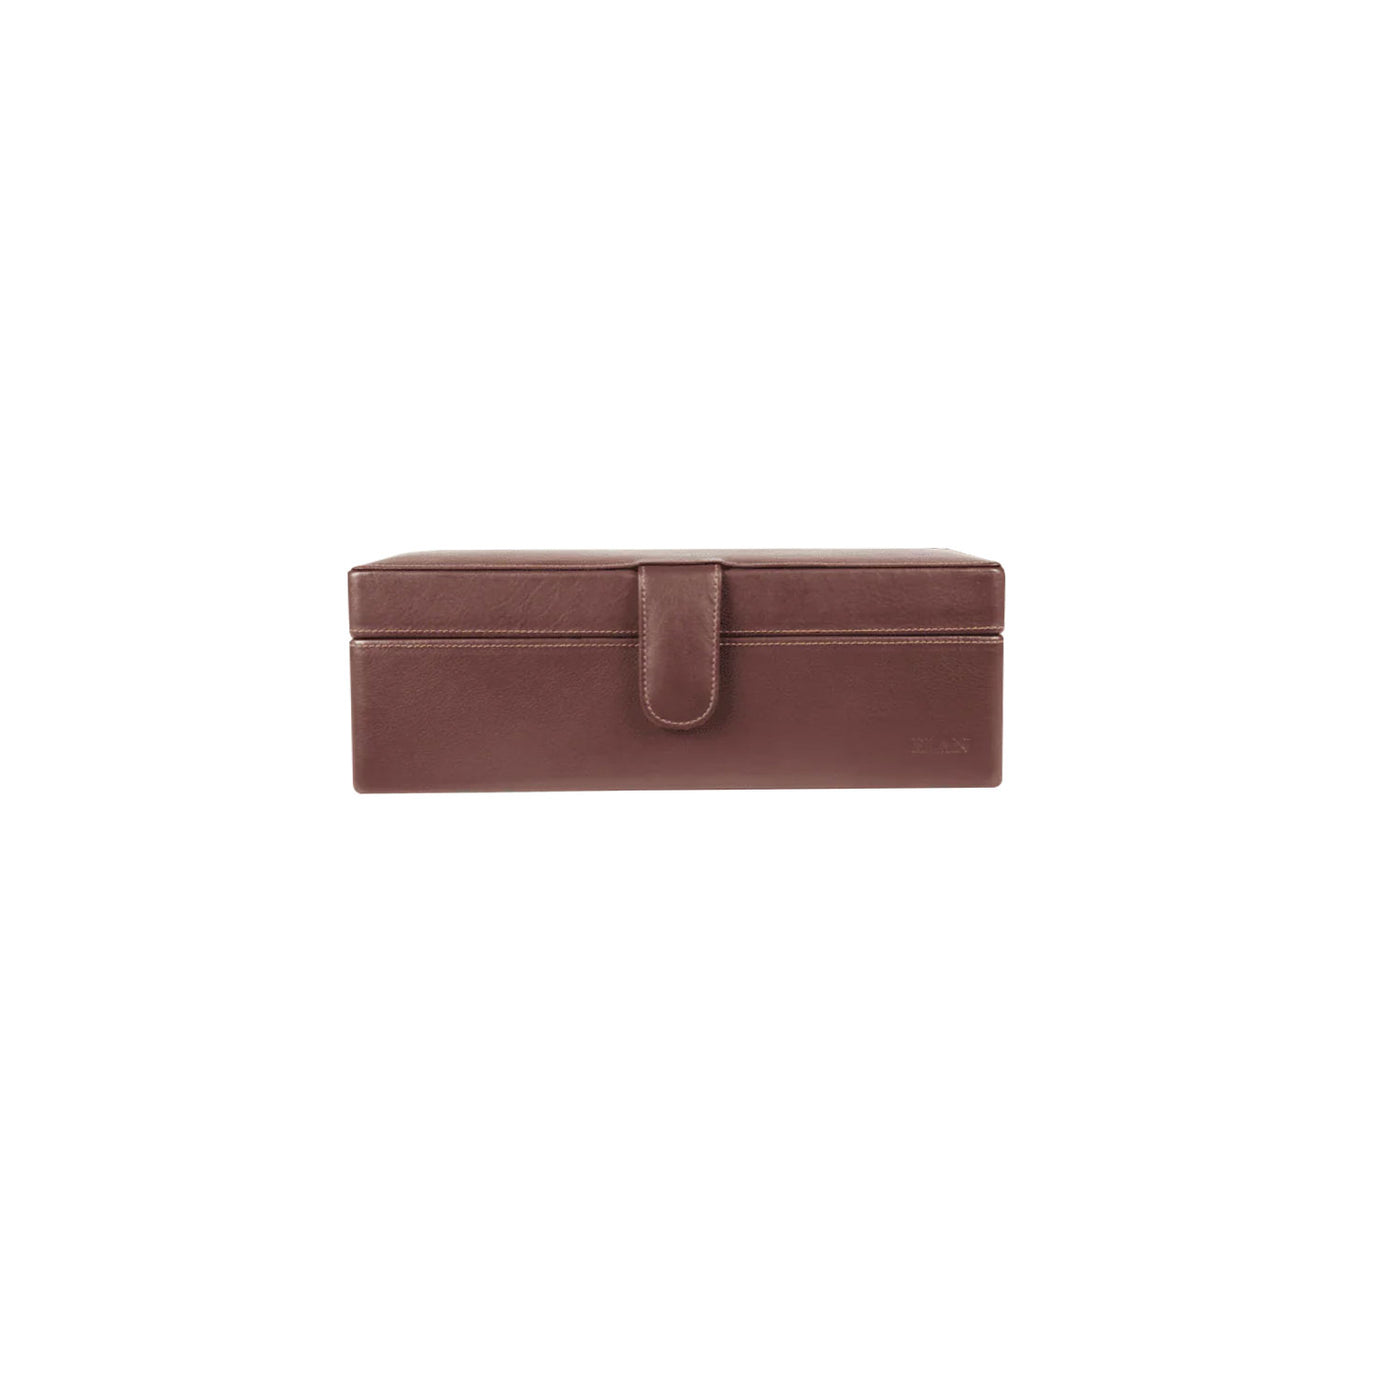 Elan Leather 4 Watch Case - Brown 2